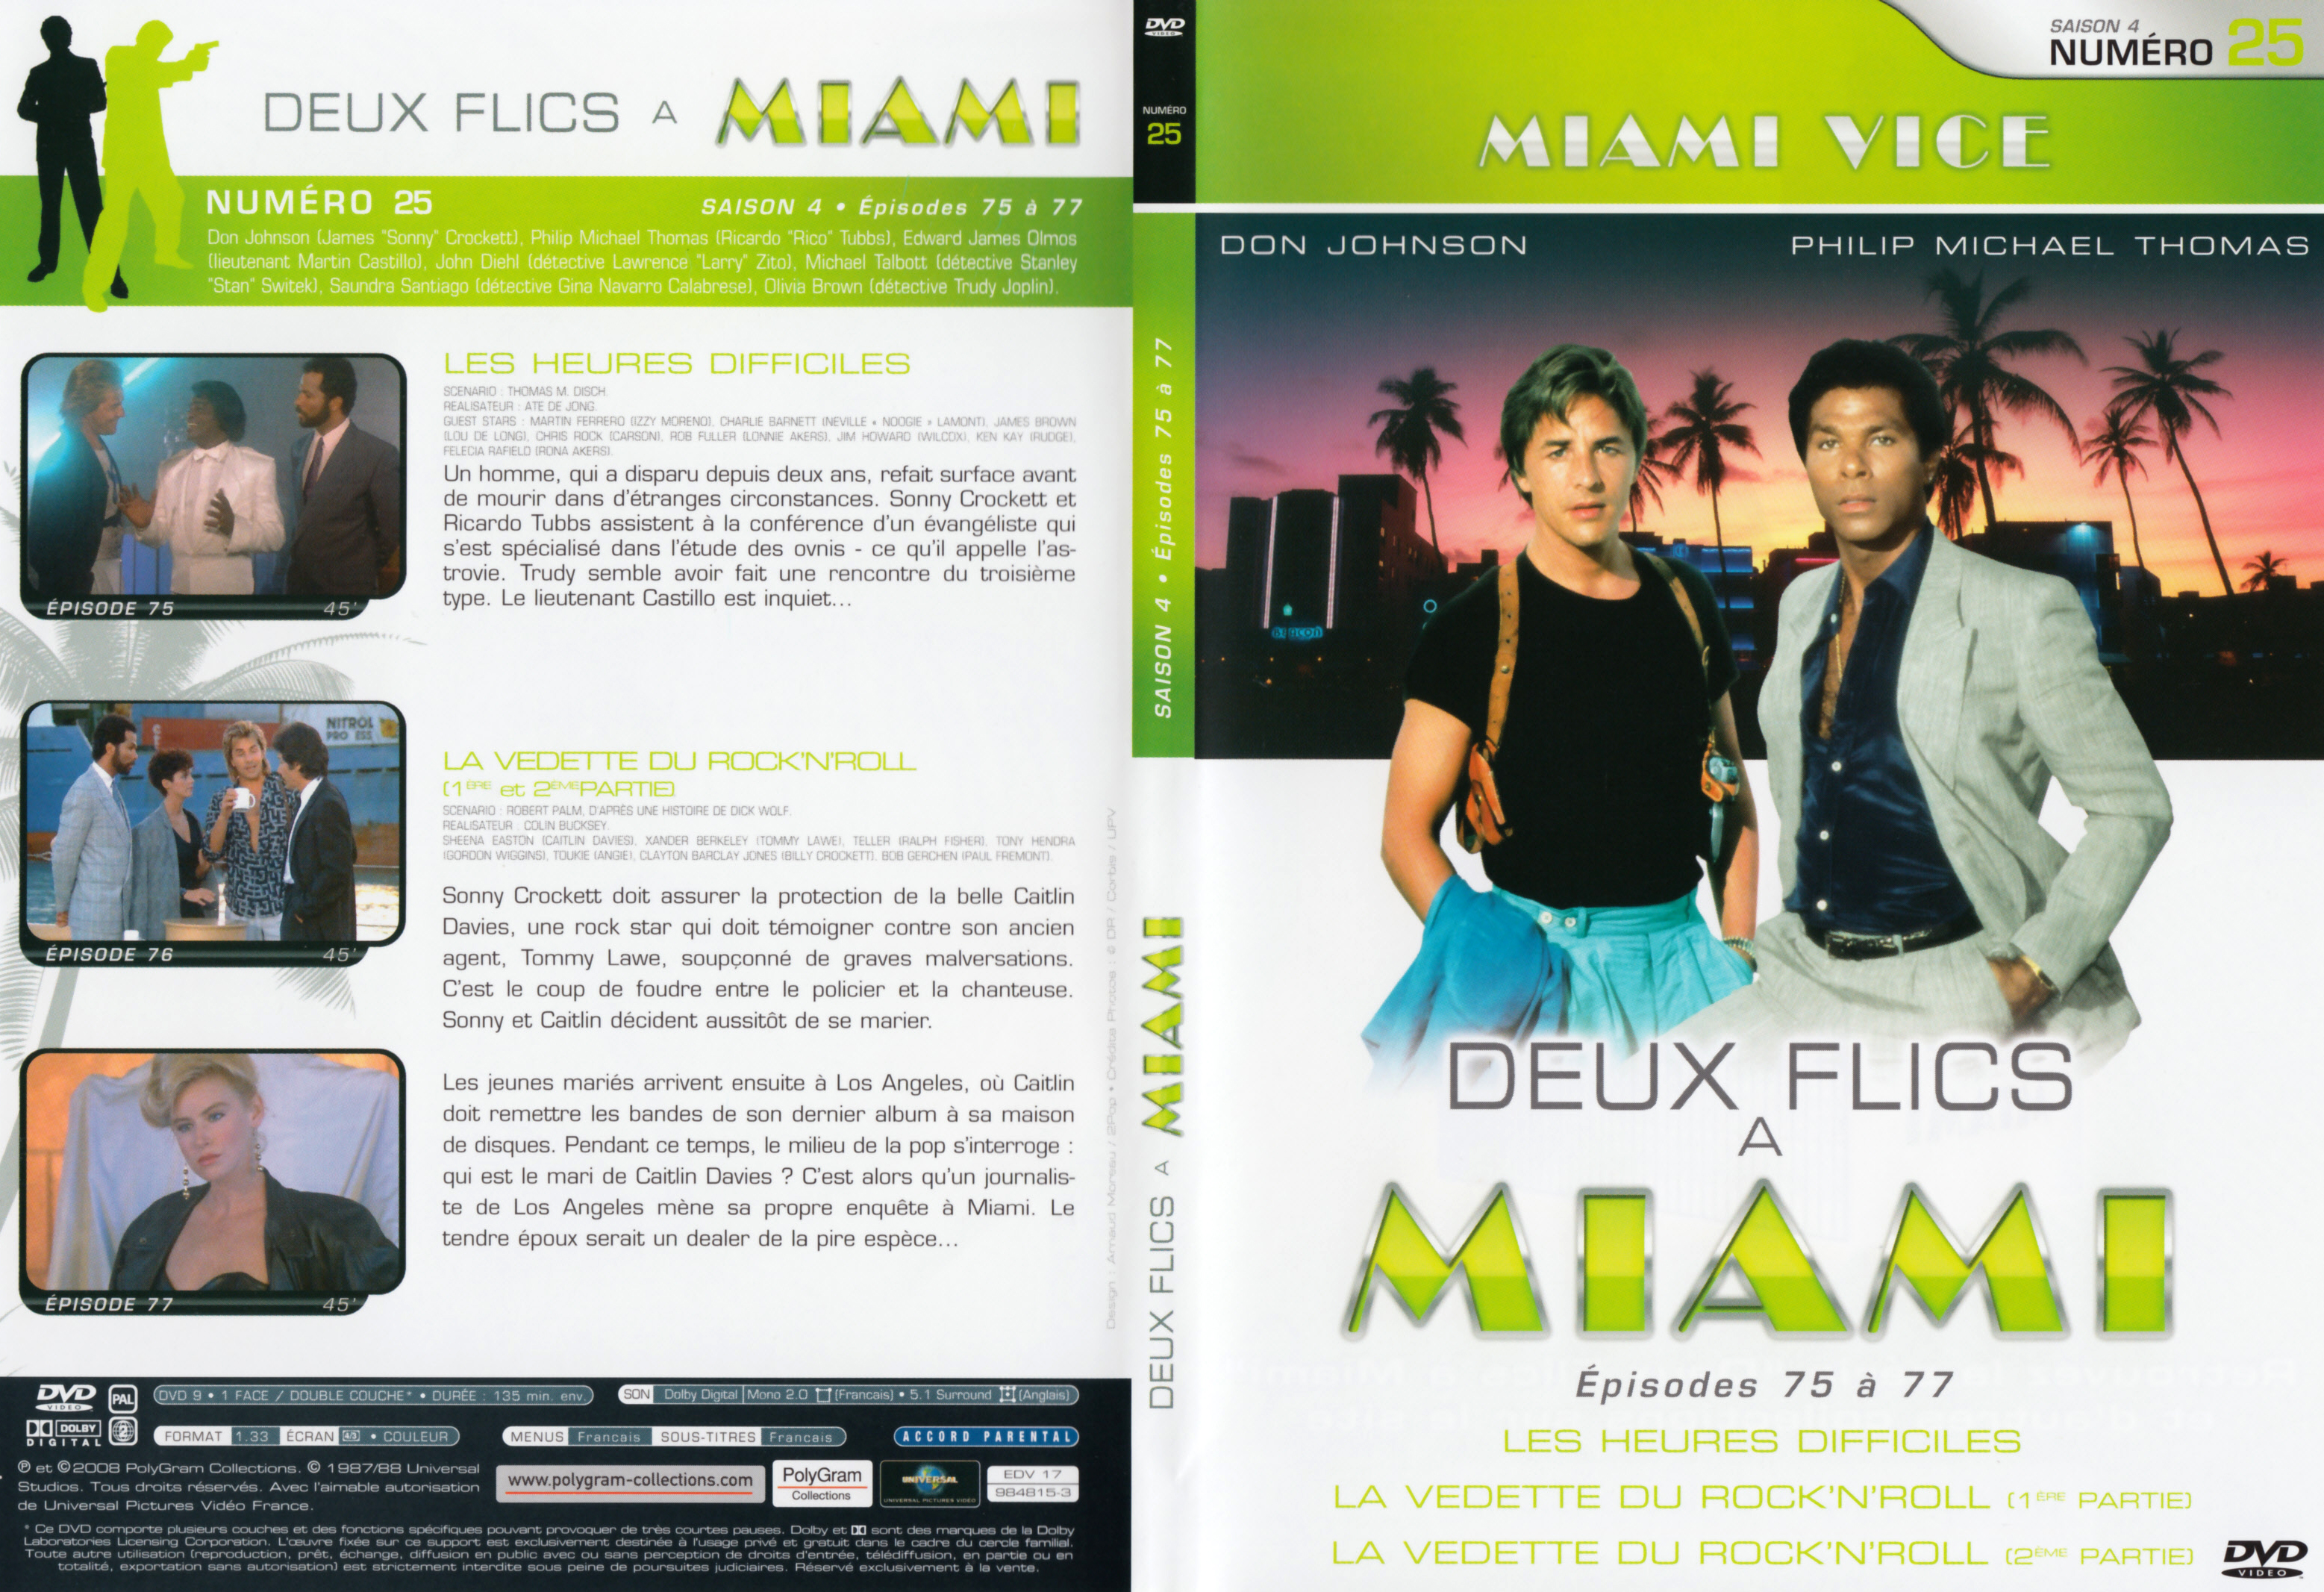 Jaquette DVD Deux flics  Miami Saison 4 vol 25